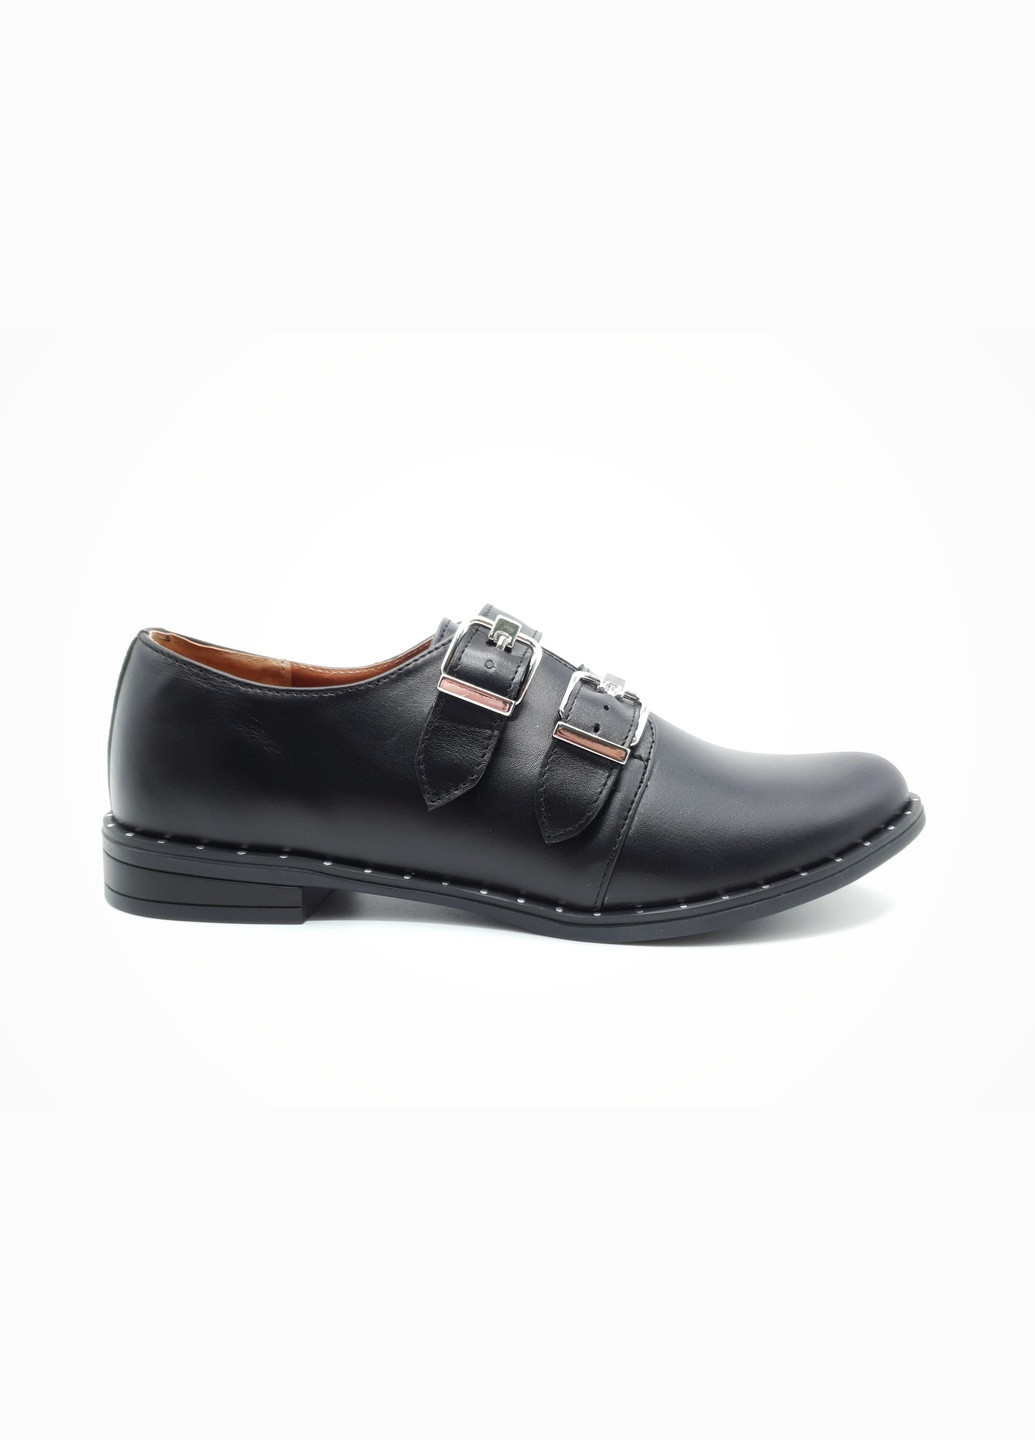 Женские туфли черные кожаные E-16-11 23,5 см (р) Eva